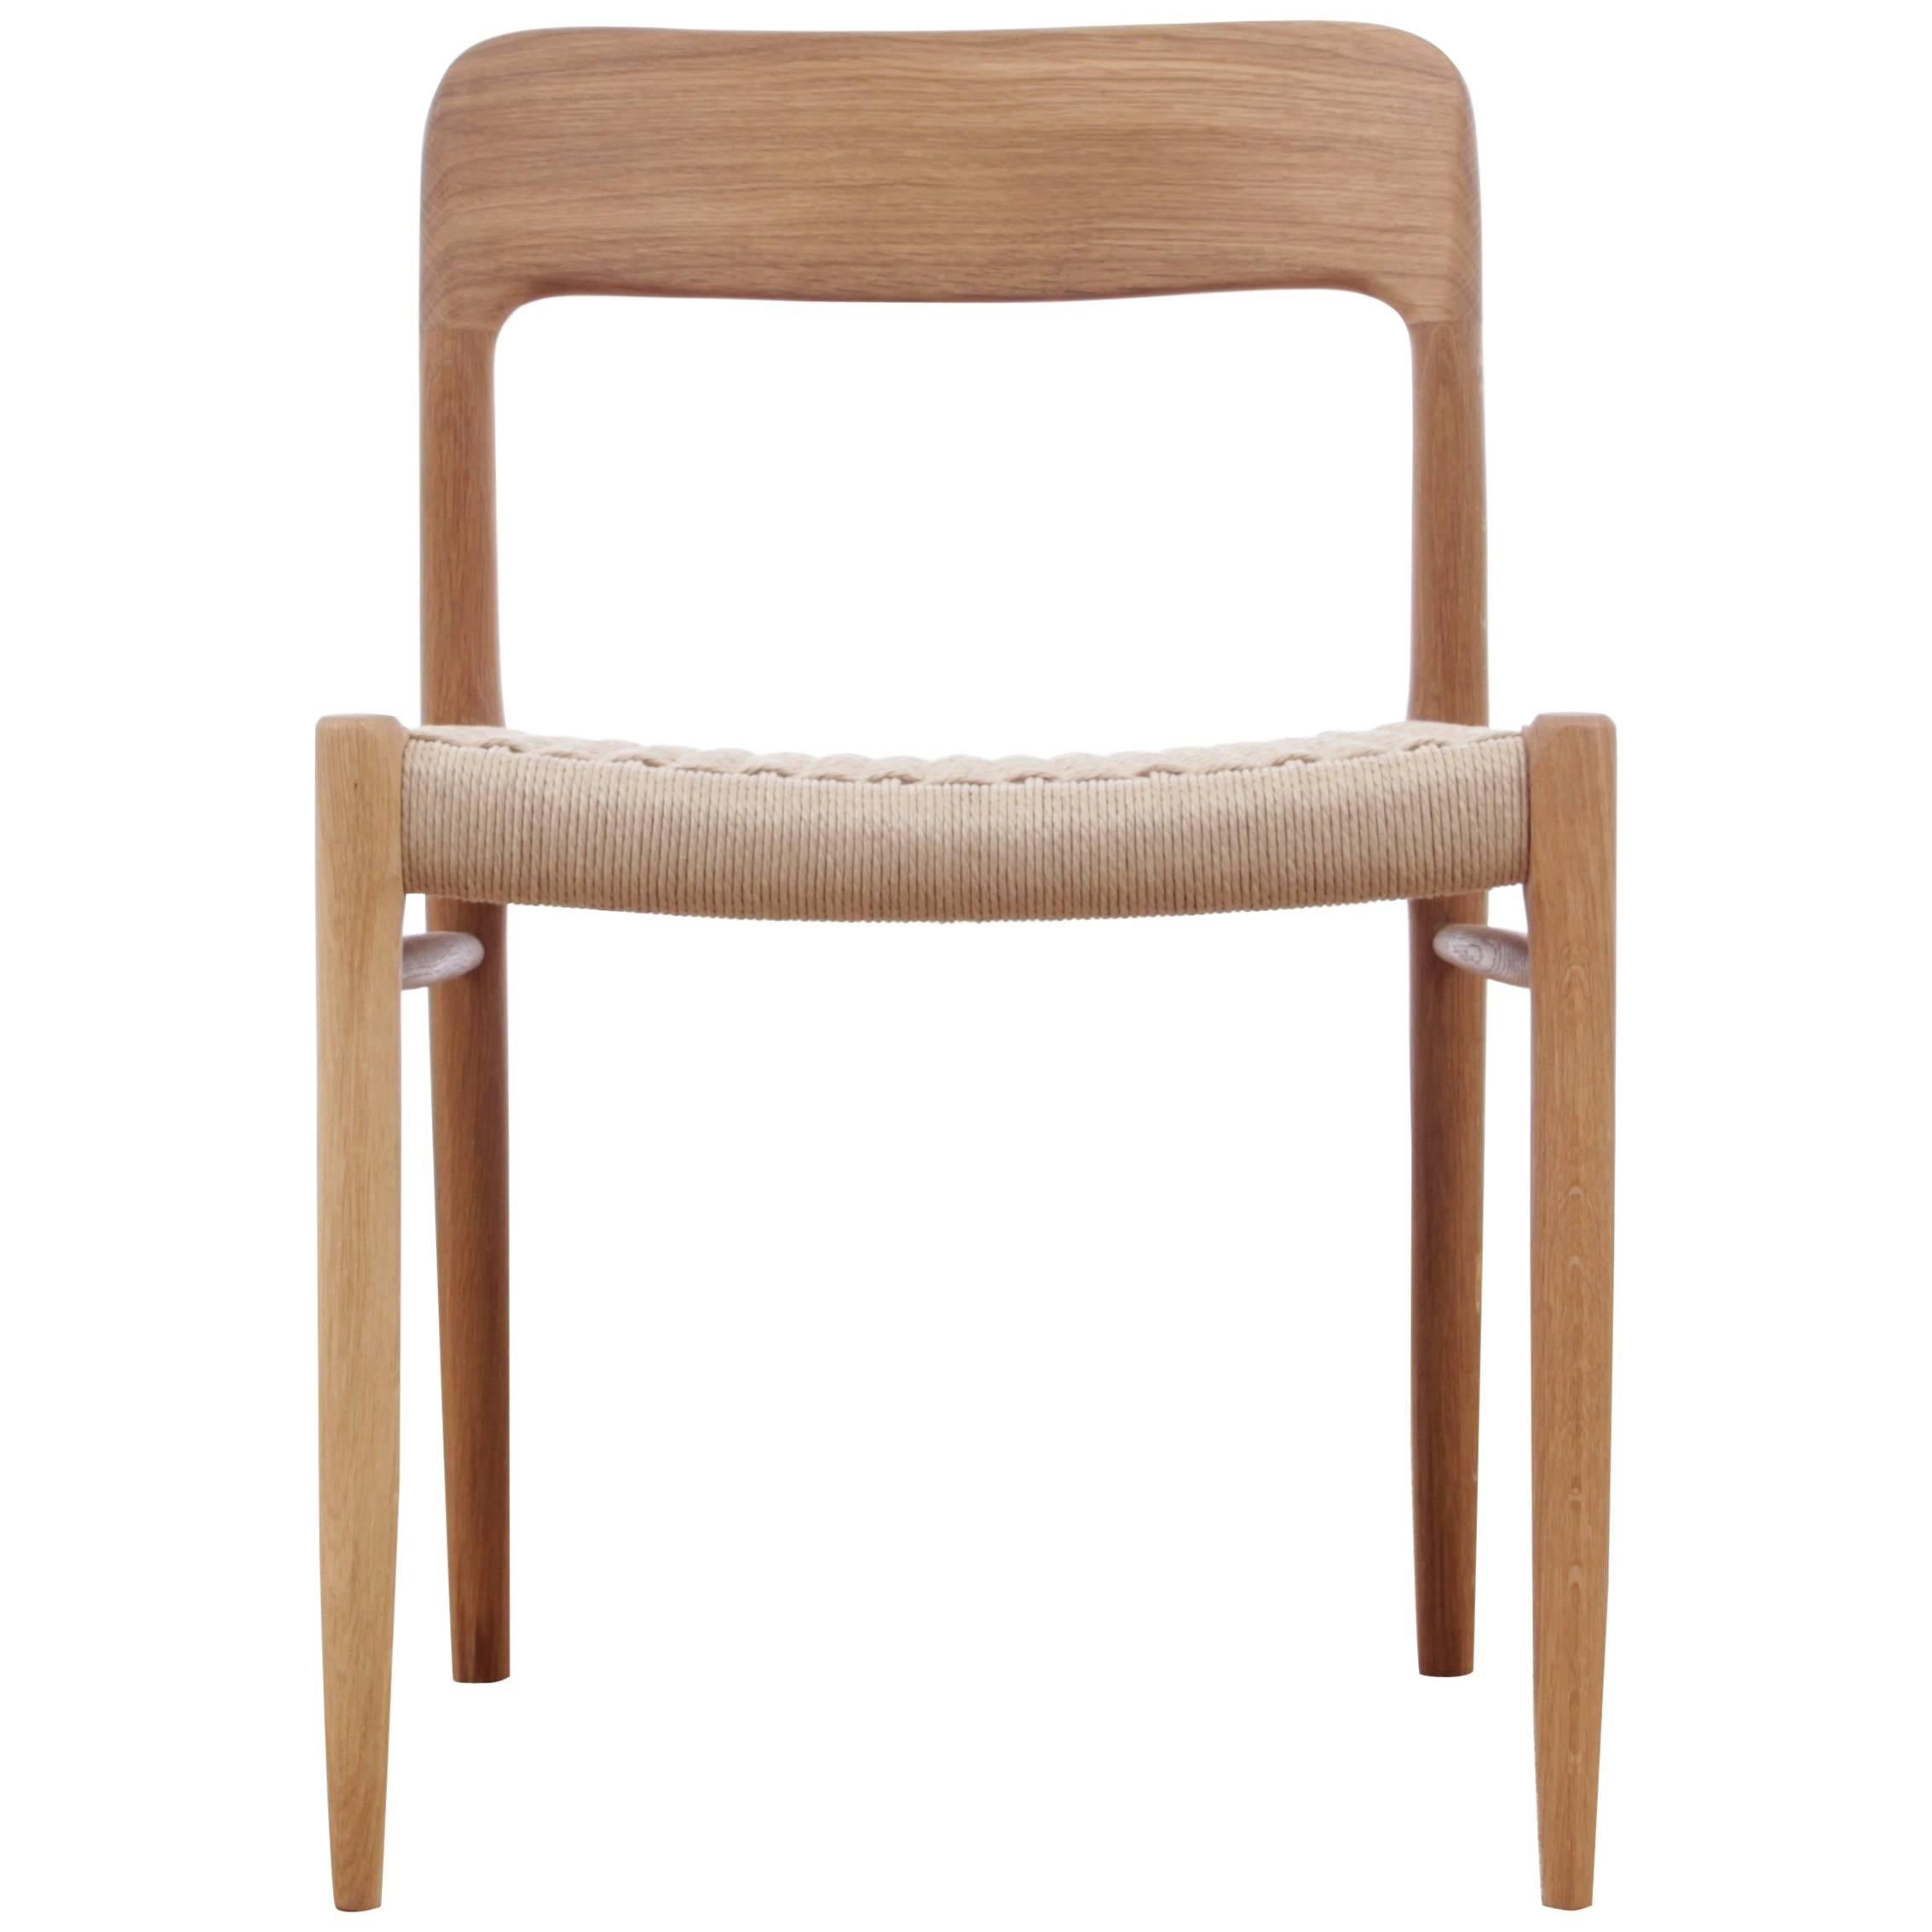 Mid-Century Modern Danish Chair Model 75 by Niels O. Møller. New model